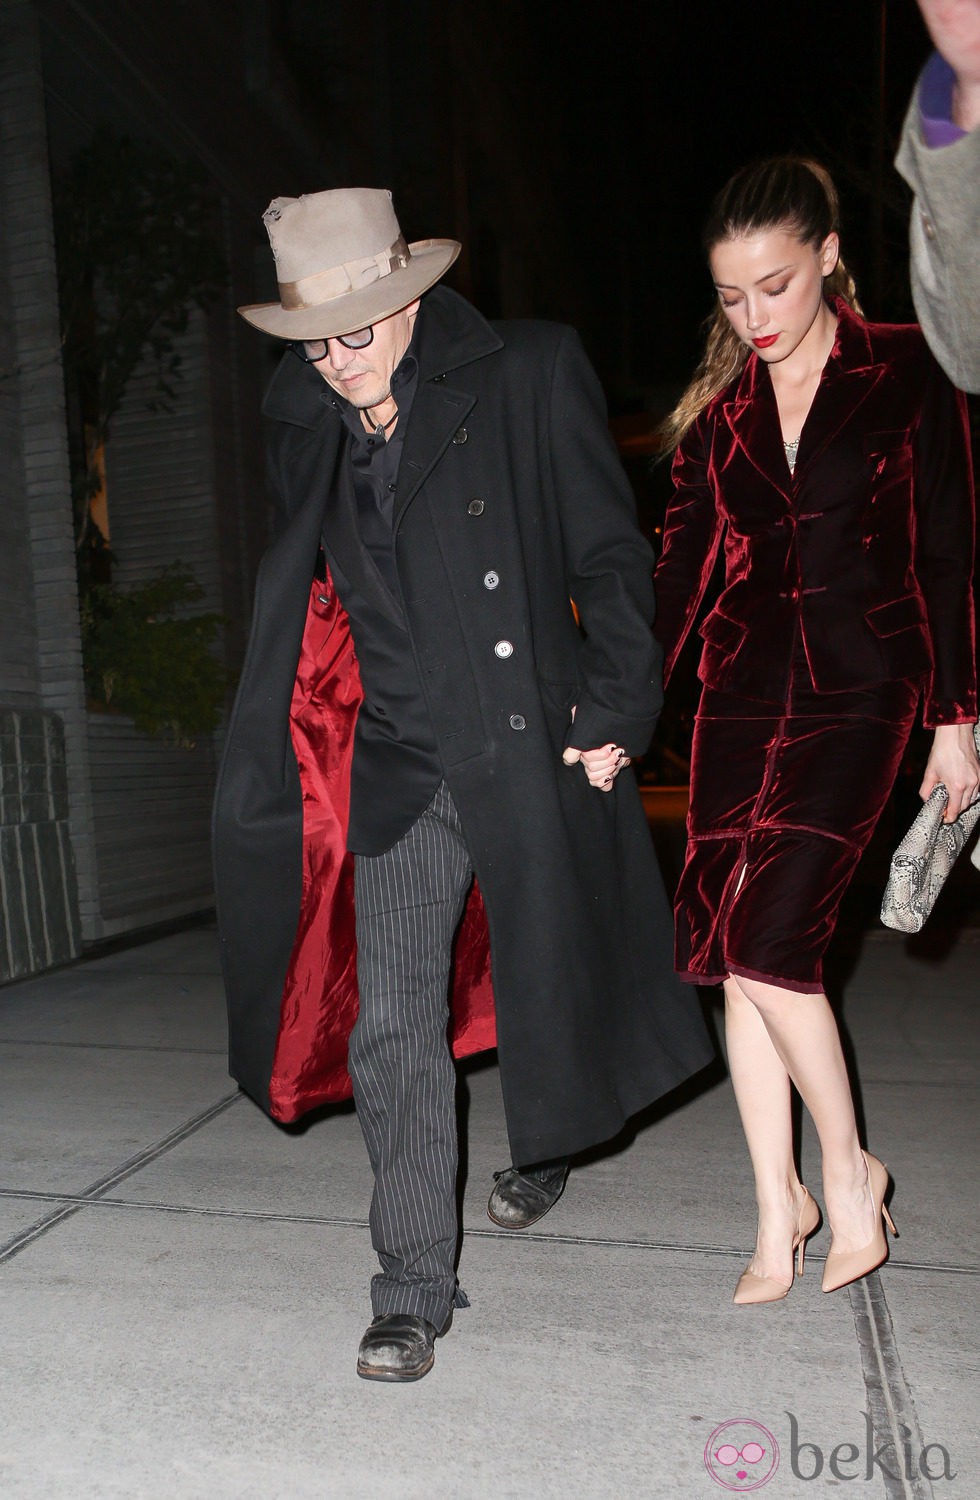 Amber Heard celebra su 28 cumpleaños saliendo a cenar con Johnny Depp